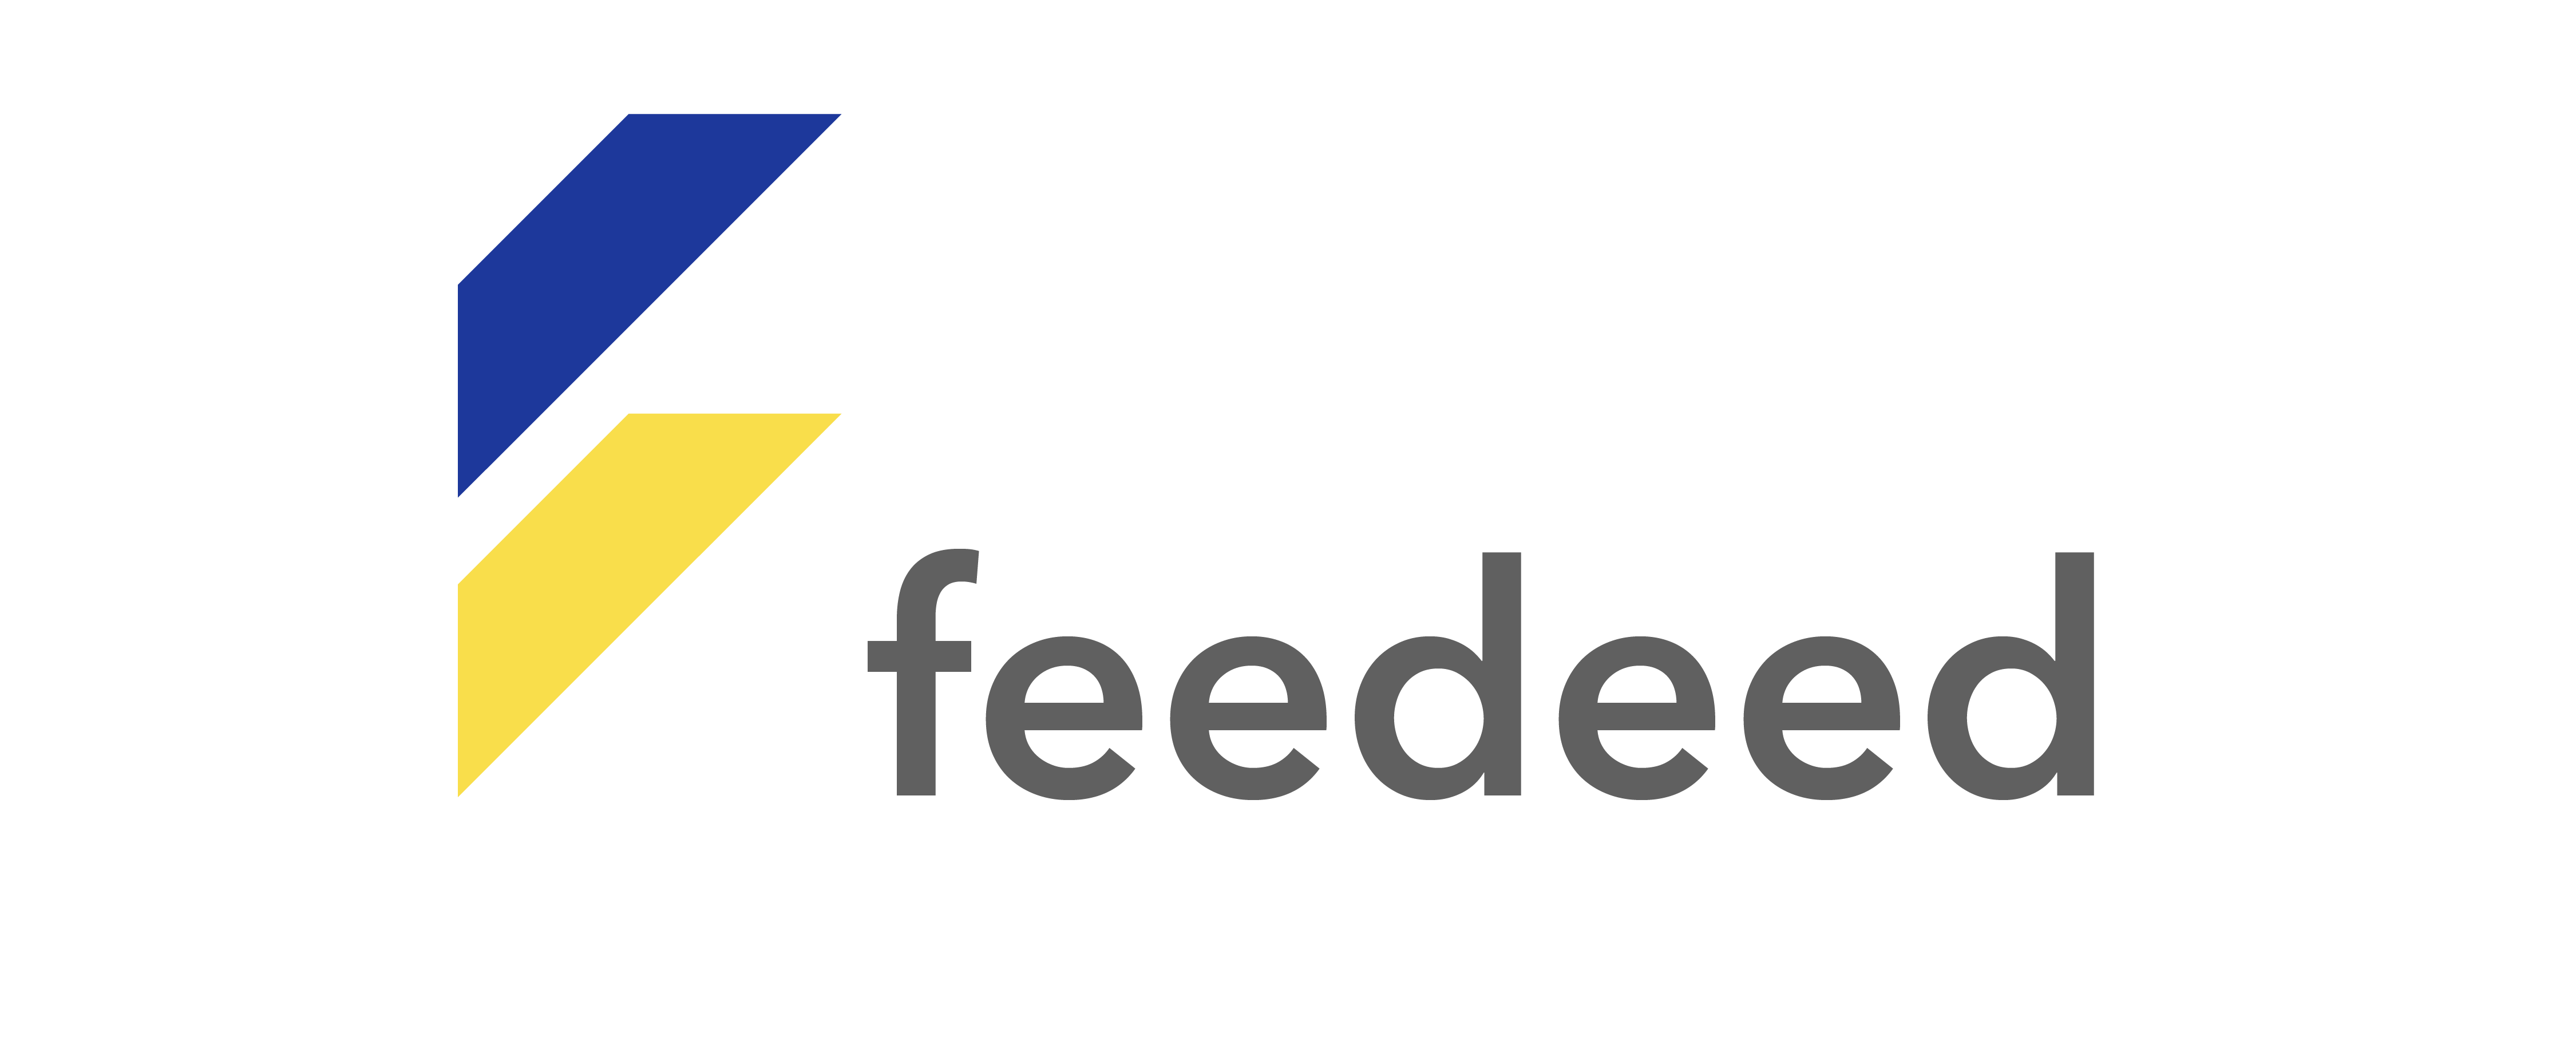 Feedeed.com